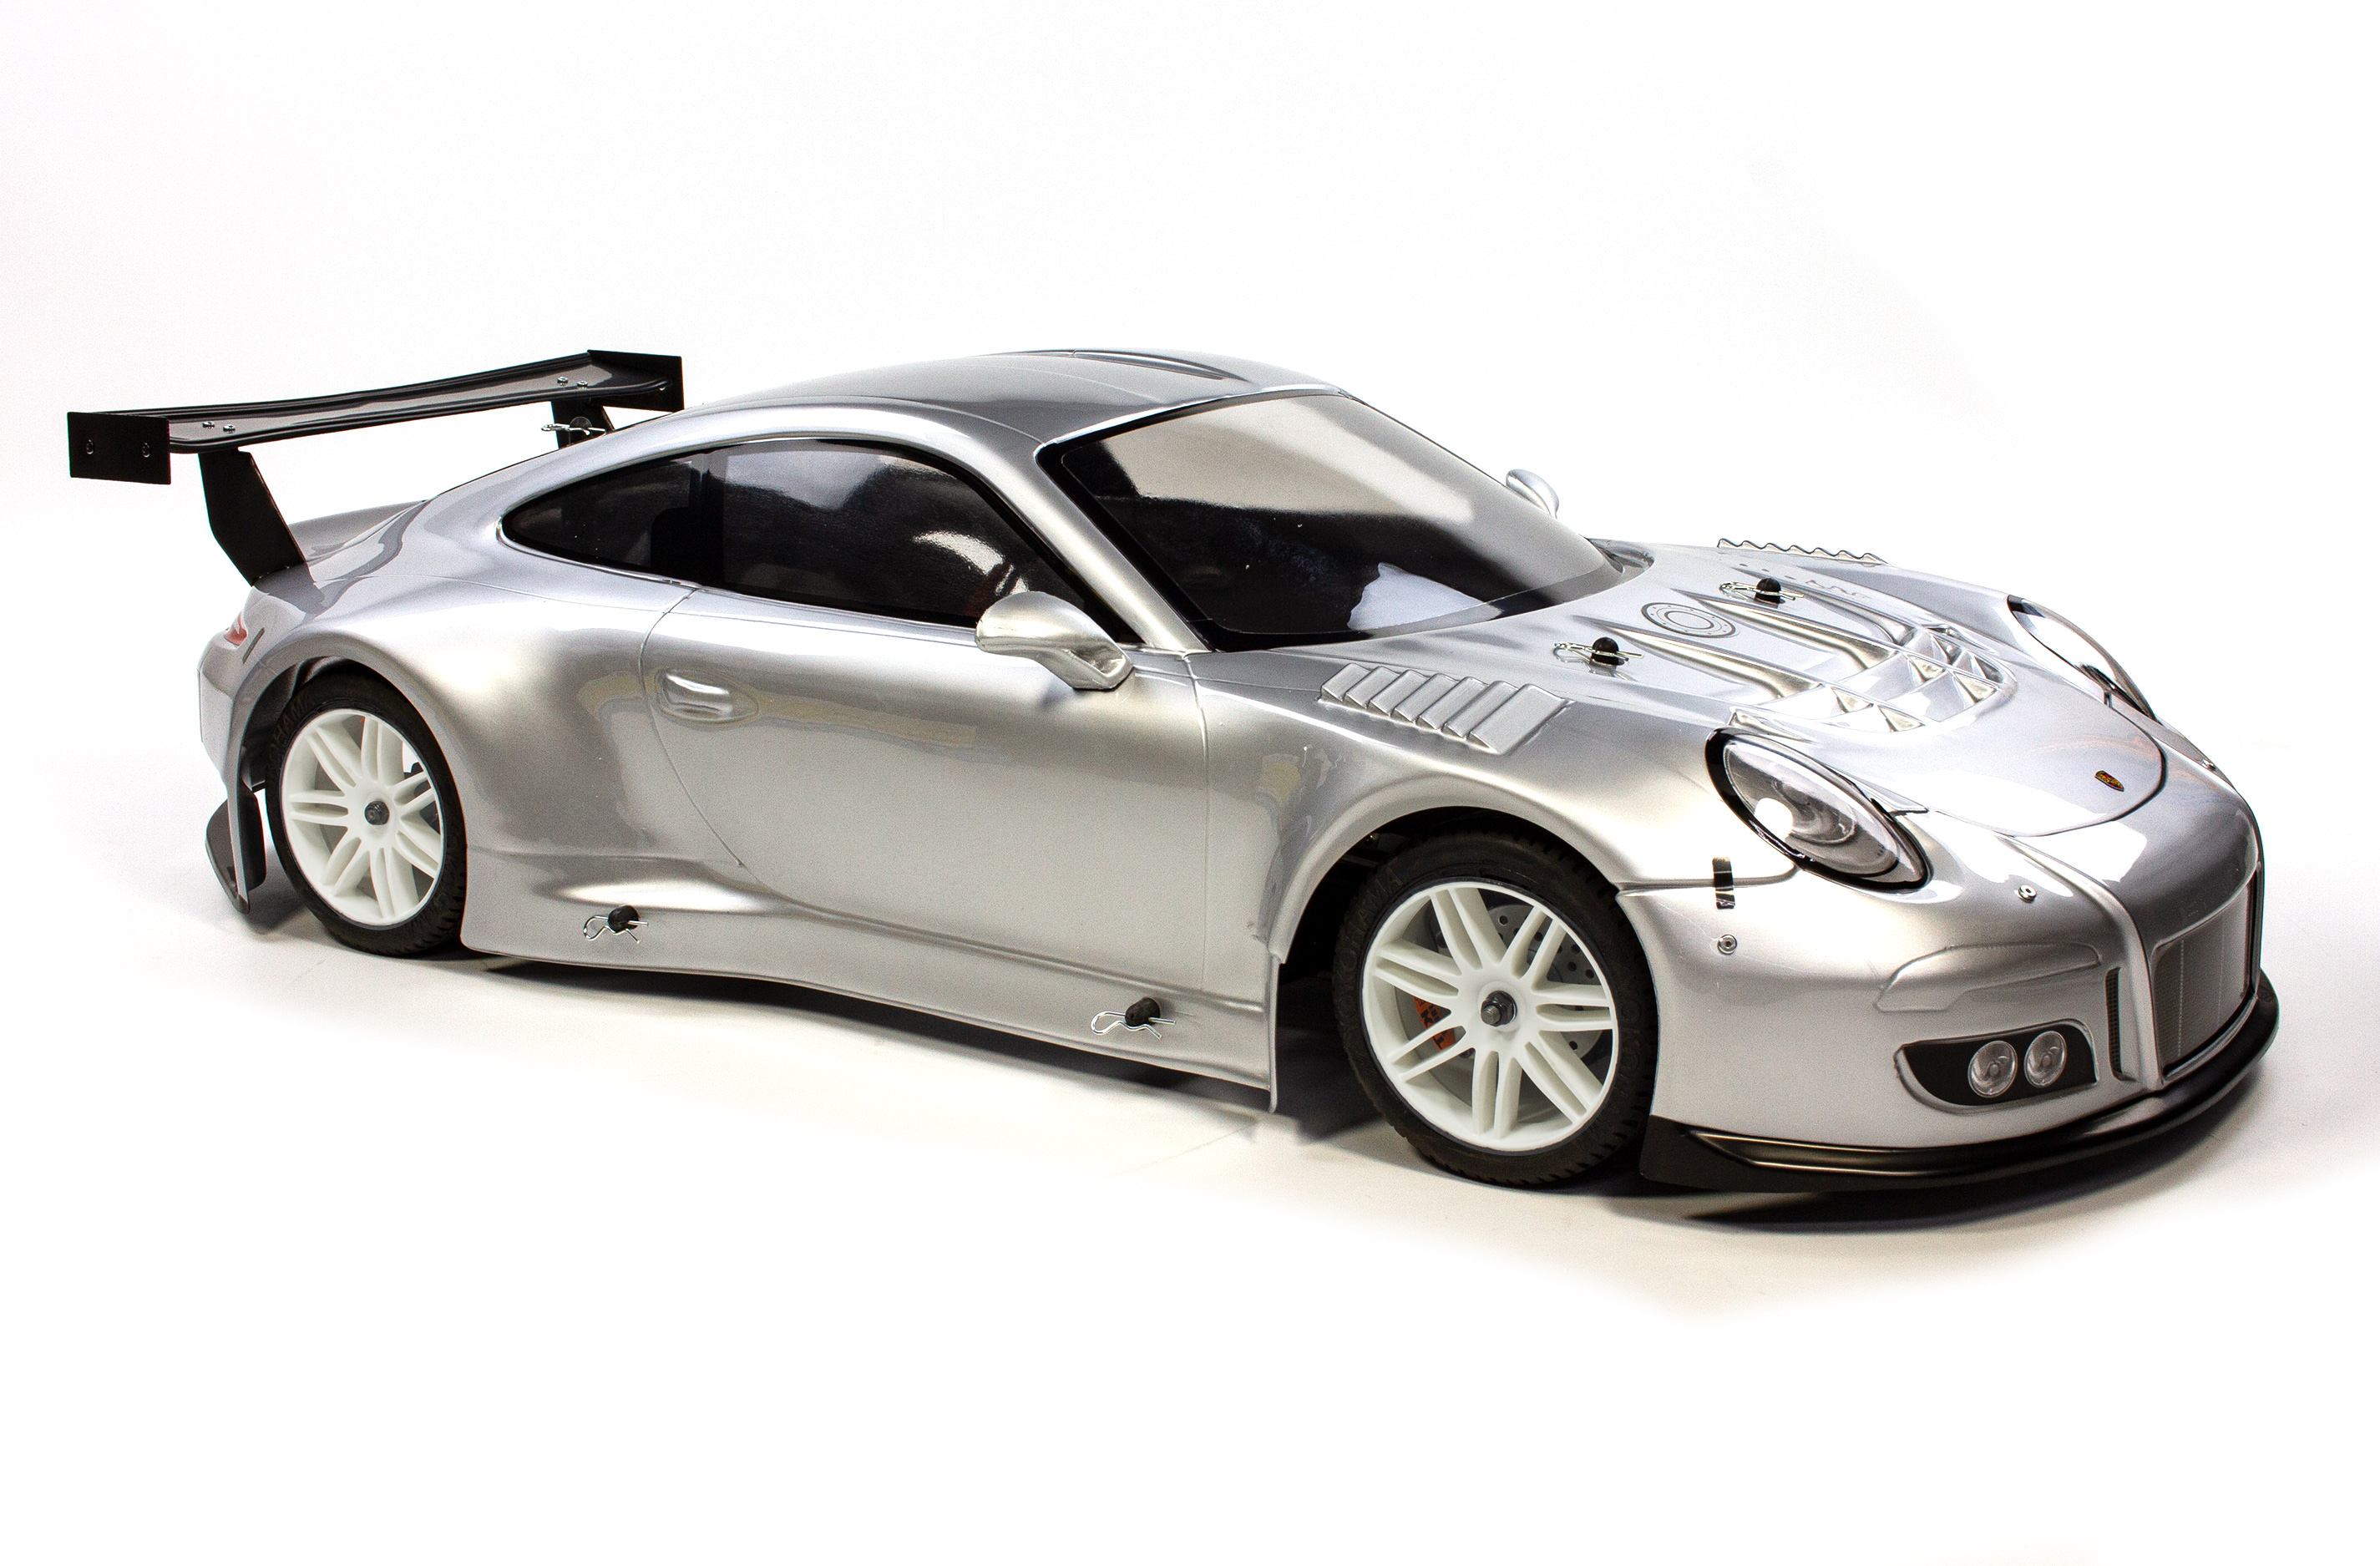 FG Sportsline mit Porsche 911 Karosserie, 530 mm Radstand, 23cm³ Motor